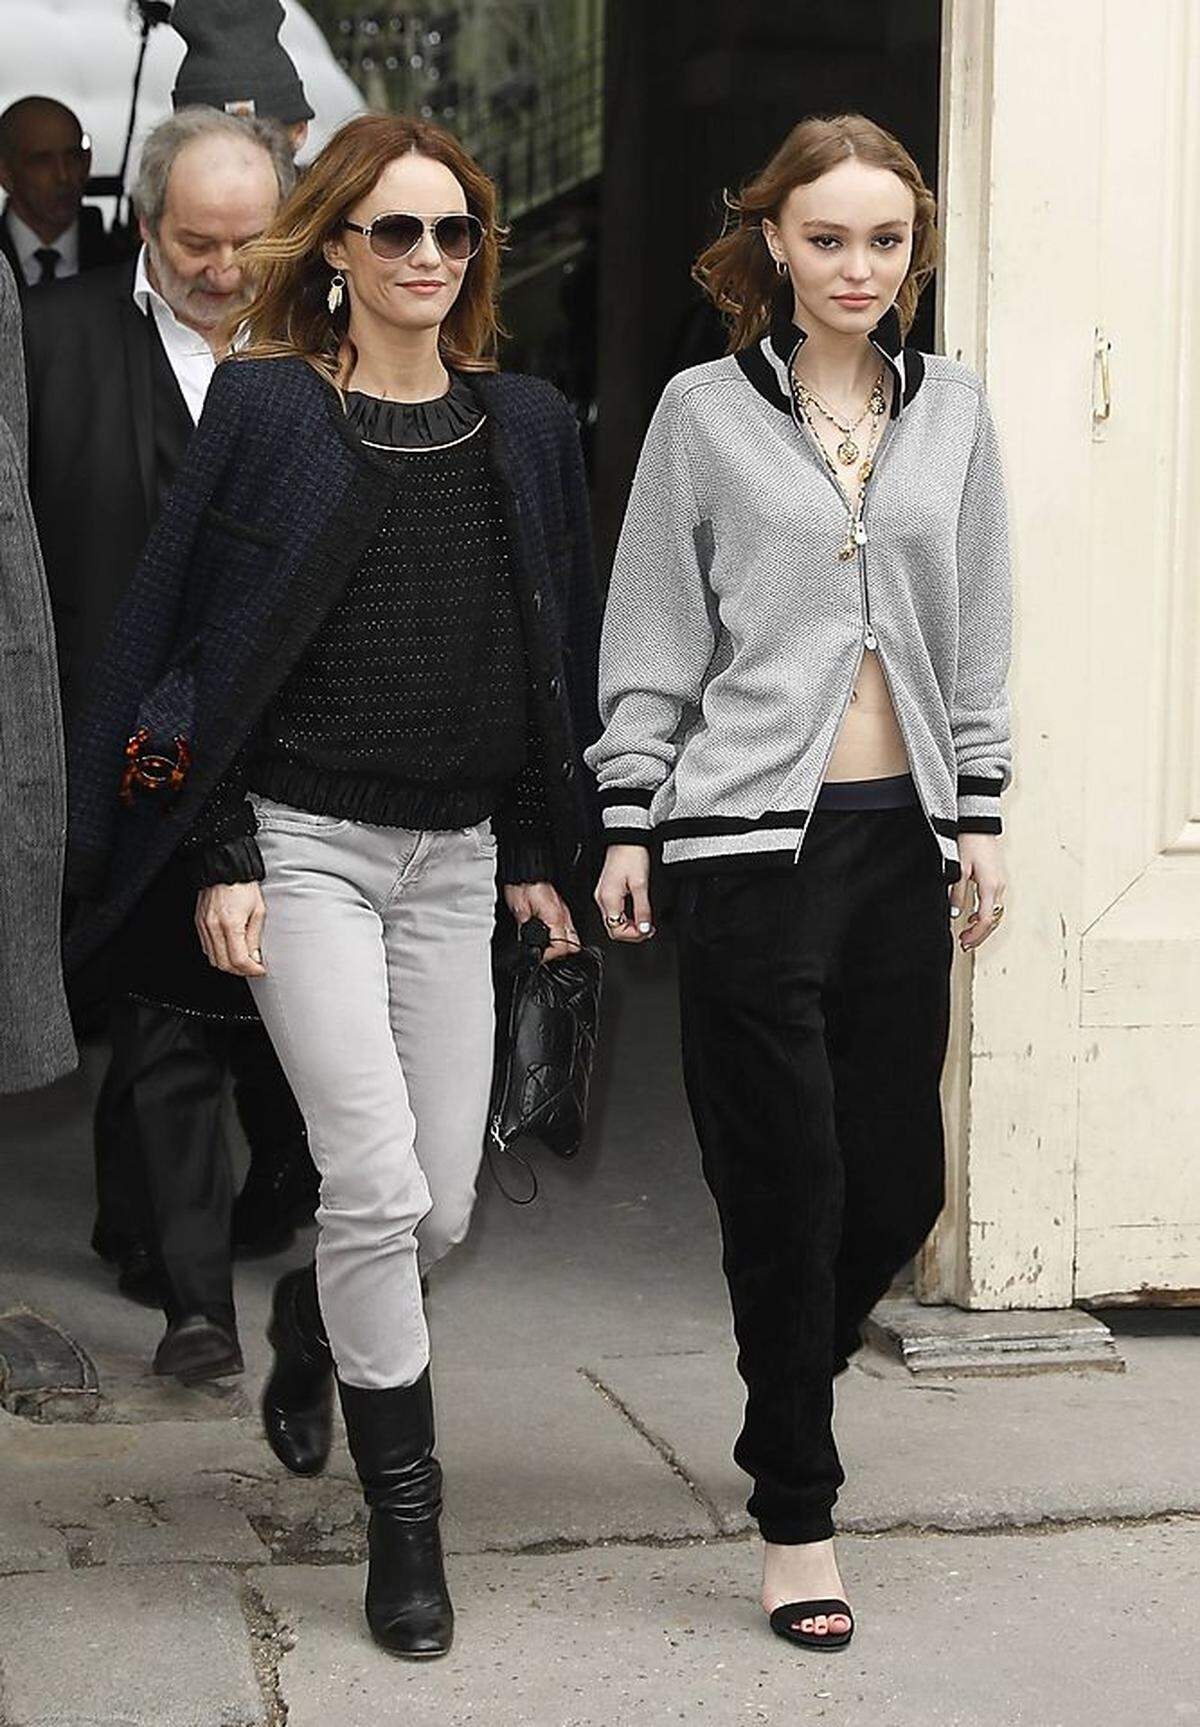 Das Mutter-Tochter Duo ist fester Bestandteil jeder Chanel-Show. Schon letztes Jahr begleitete Vanessa Paradis ihre Tochter, deren Vater Johnny Depp ist, zu ihrem Laufstegauftritt bei der Couture-Schau von Chanel.